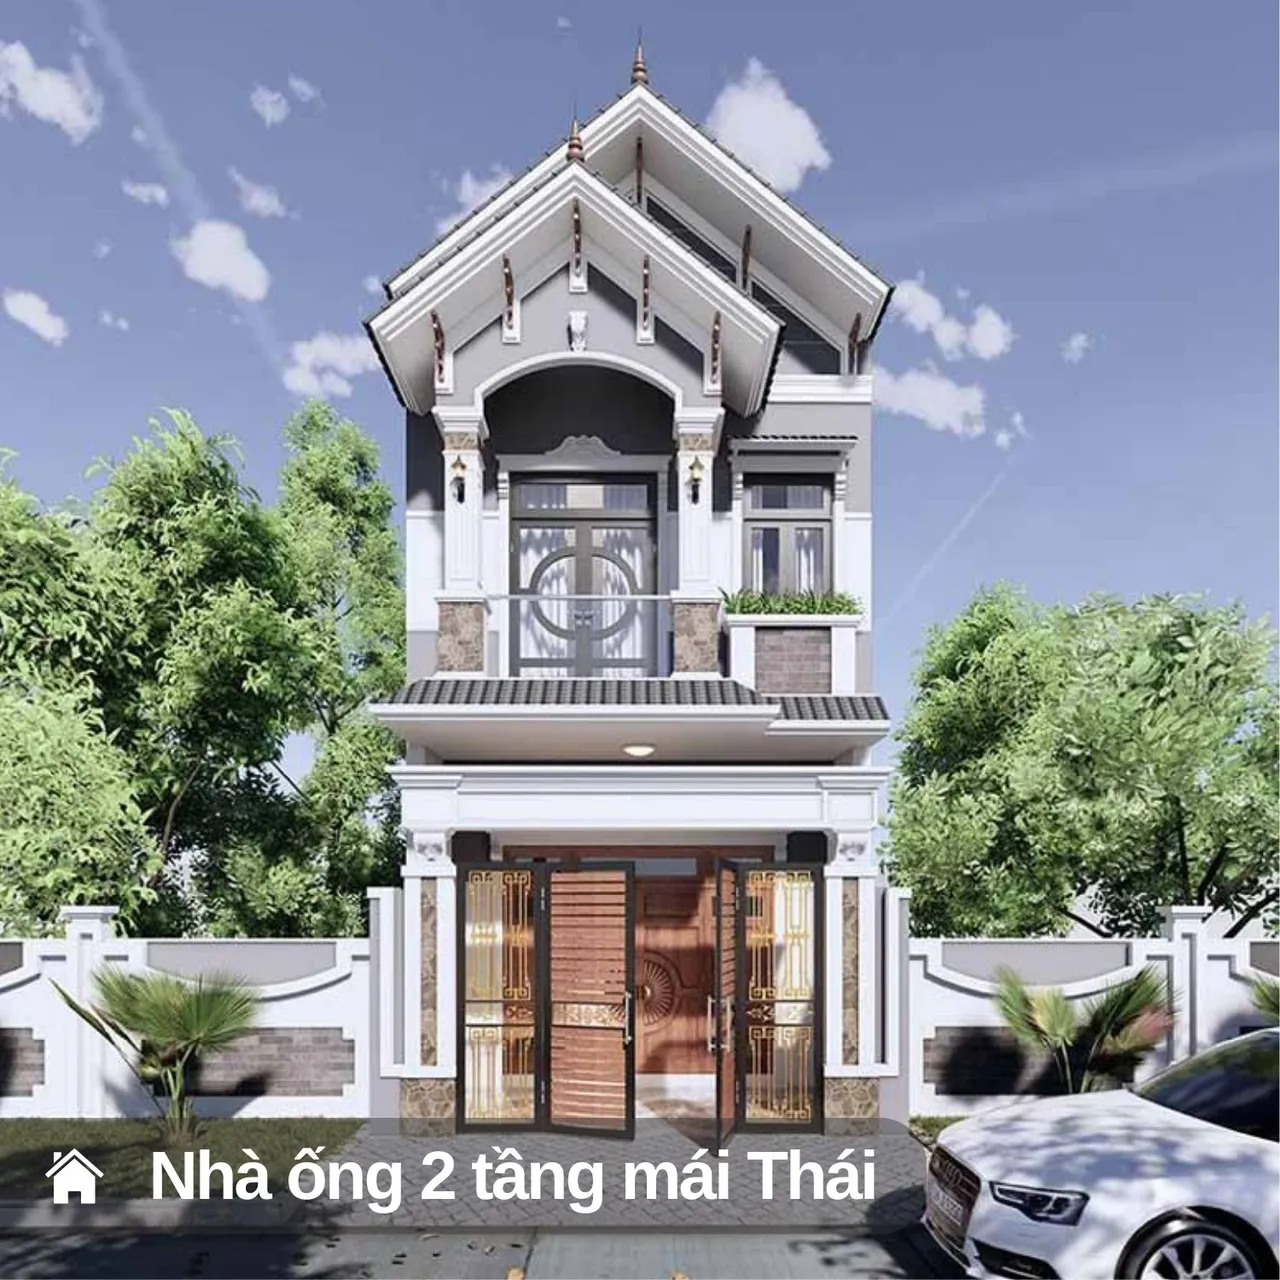 NHÀ ỐNG 2 TẦNG MÁI THÁI MẶT TIỀN 5M - B111 - Thiết kế nhà đẹpThiết kế nhà  đẹp